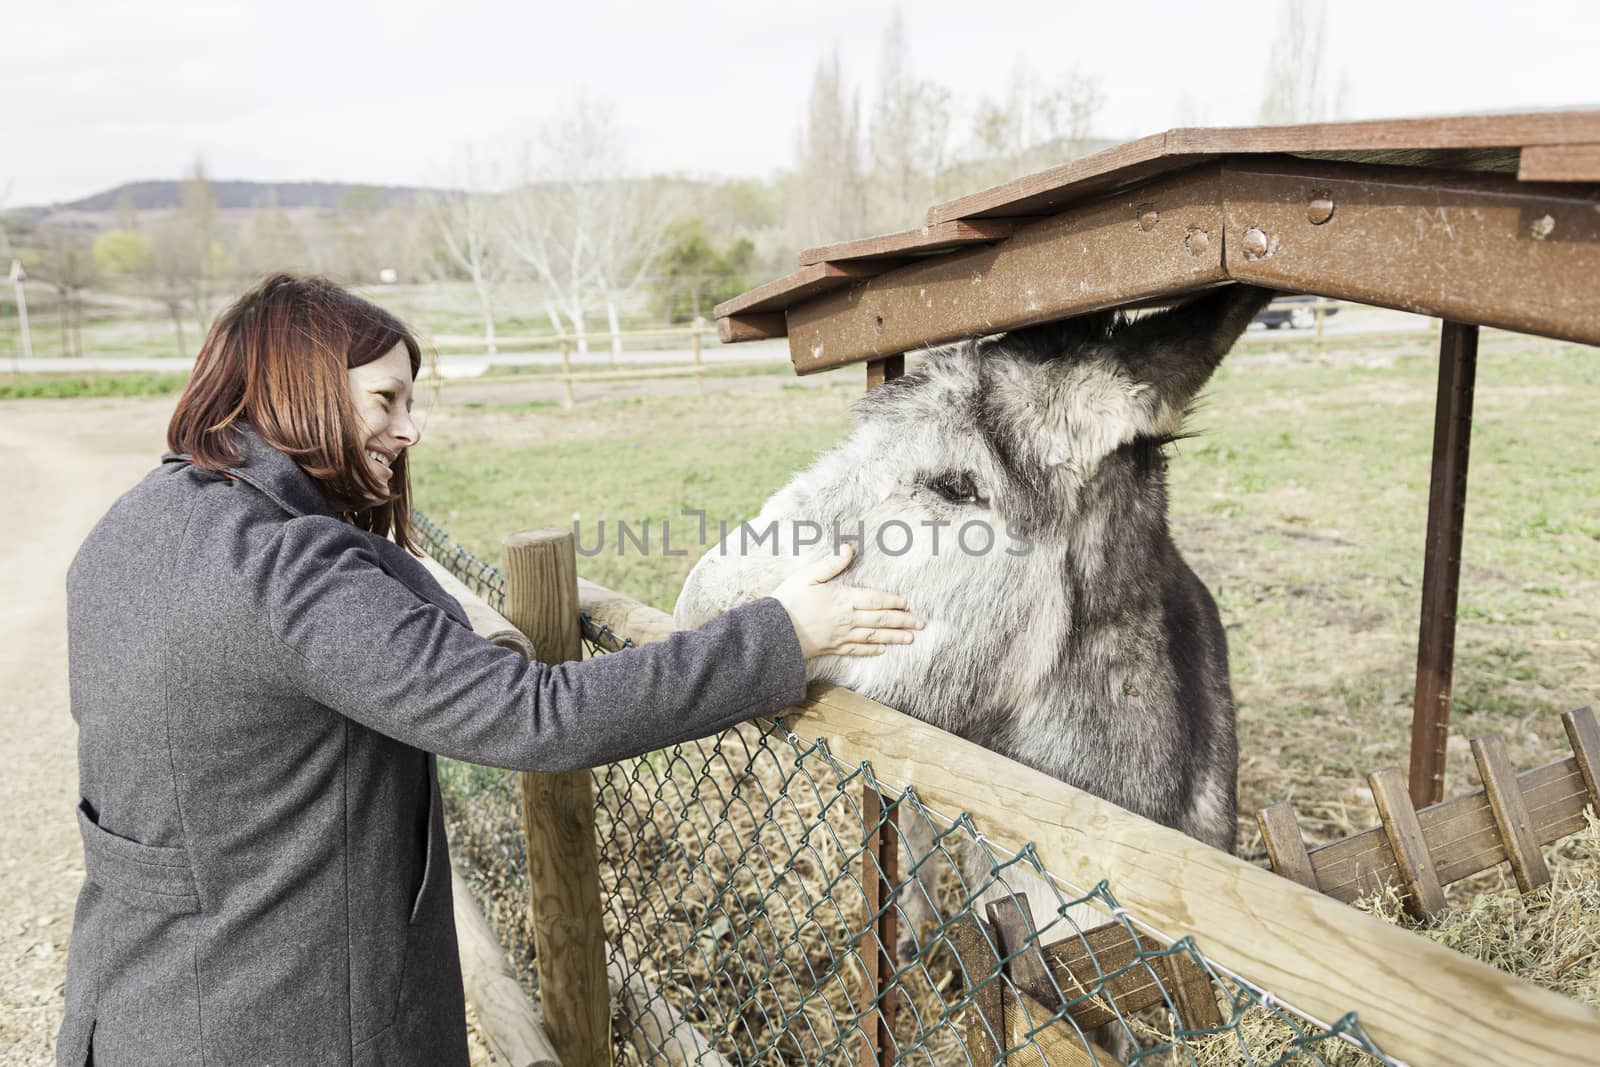 Petting a donkey on a farm by esebene